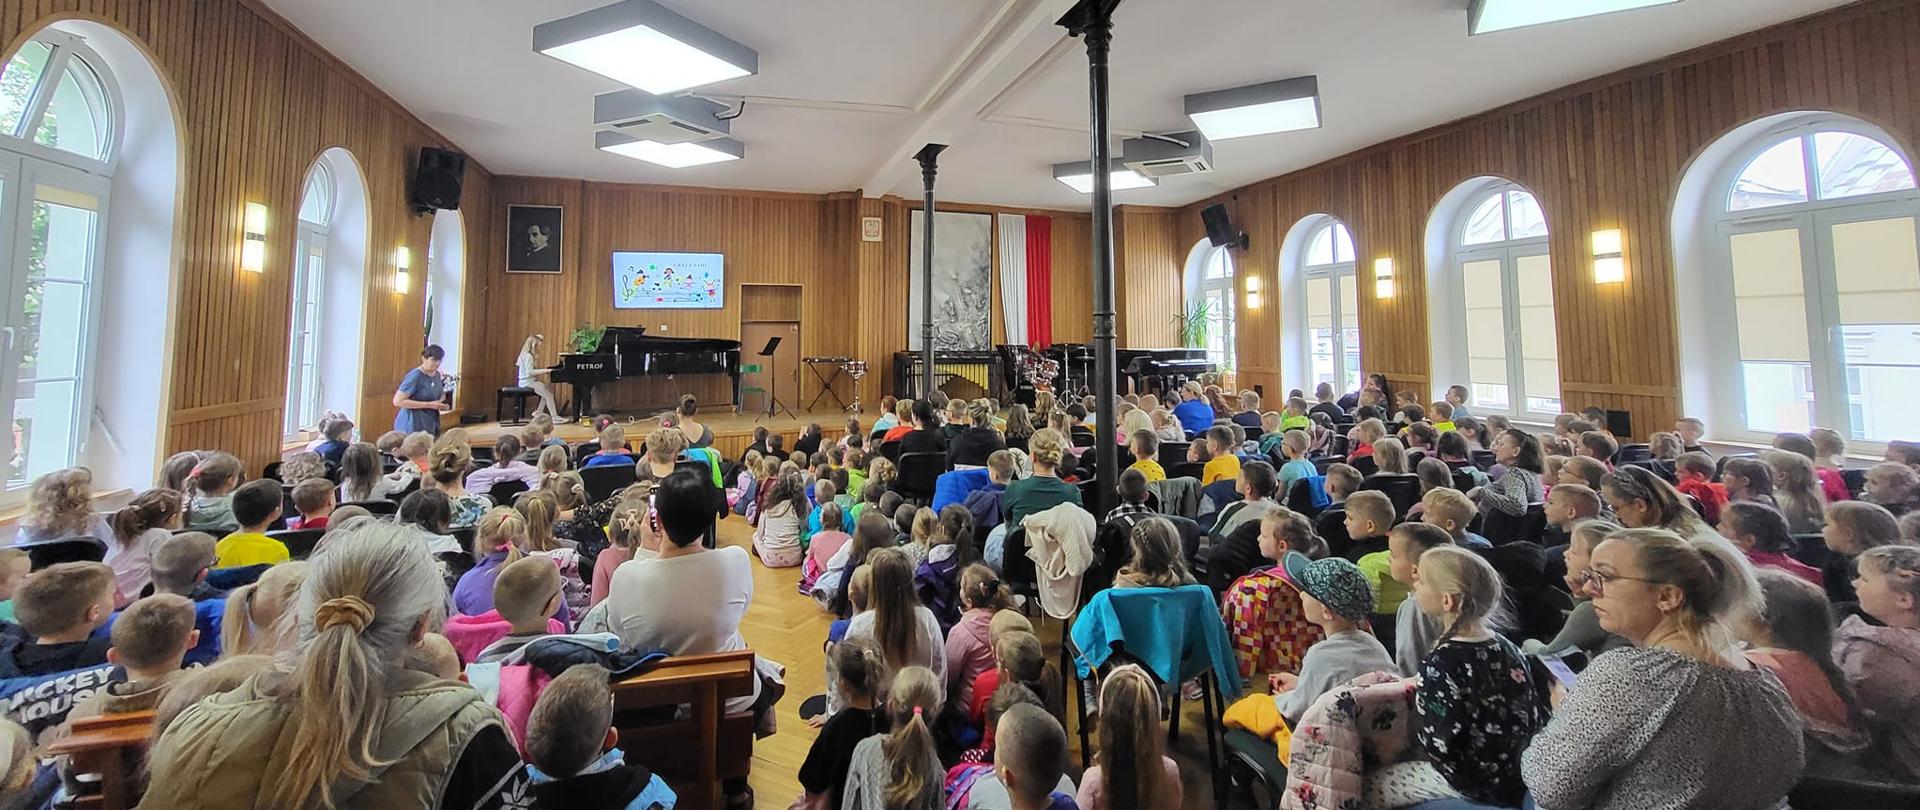 Fotografia przedstawia nauczycieli, uczniów oraz publiczność na sali koncertowej podczas dni otwartych PSM Kwidzyn